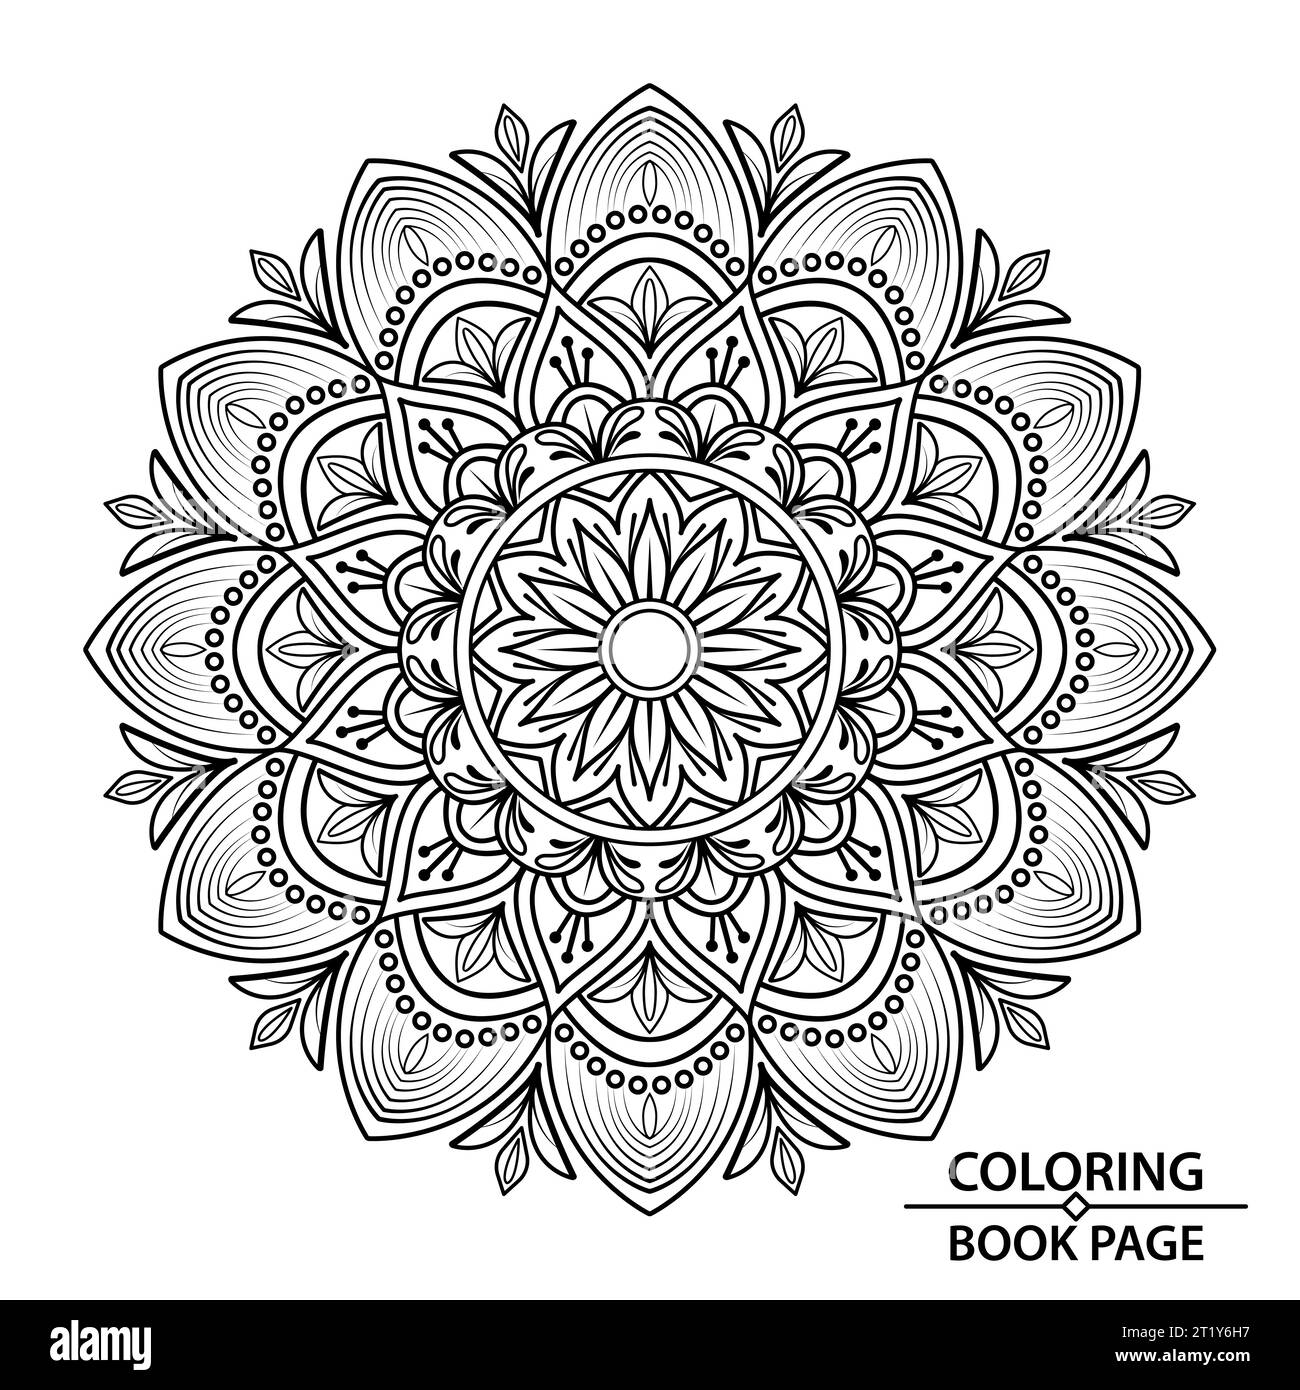 Mindfulness Mandala Design for Coloring Book Page. Afferra subito queste semplici pagine da colorare con mandala e goditi alcuni minuti di relax senza interruzioni Illustrazione Vettoriale